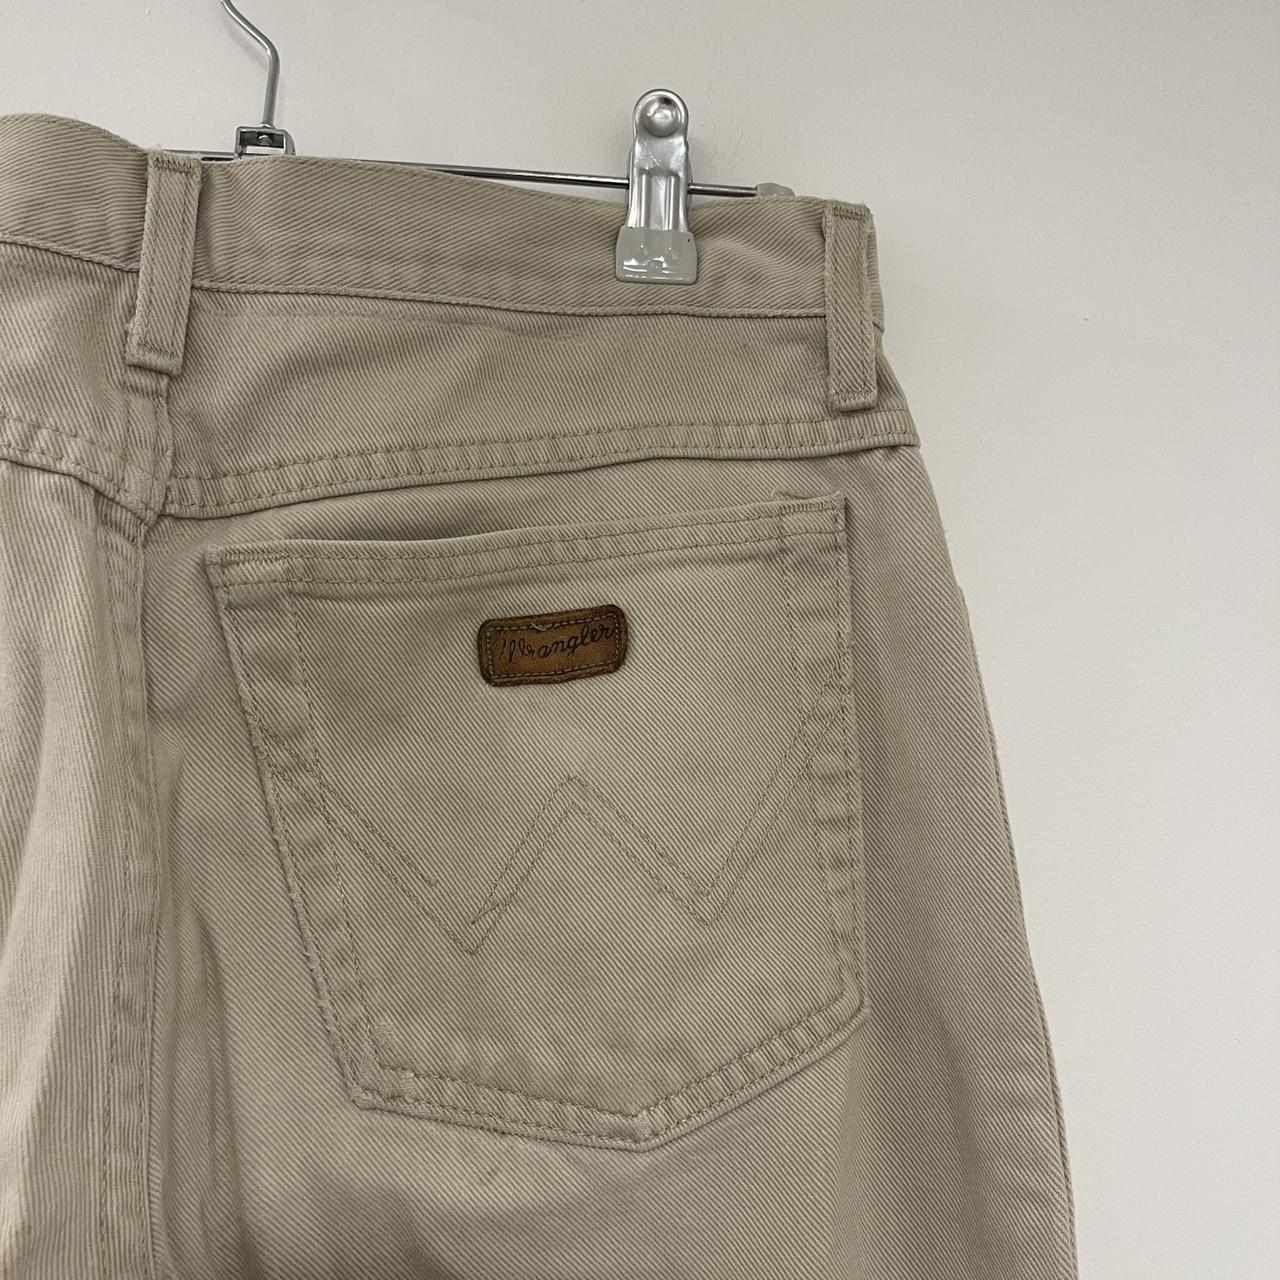 Straight leg Wrangler Trousers Brand:... - Depop